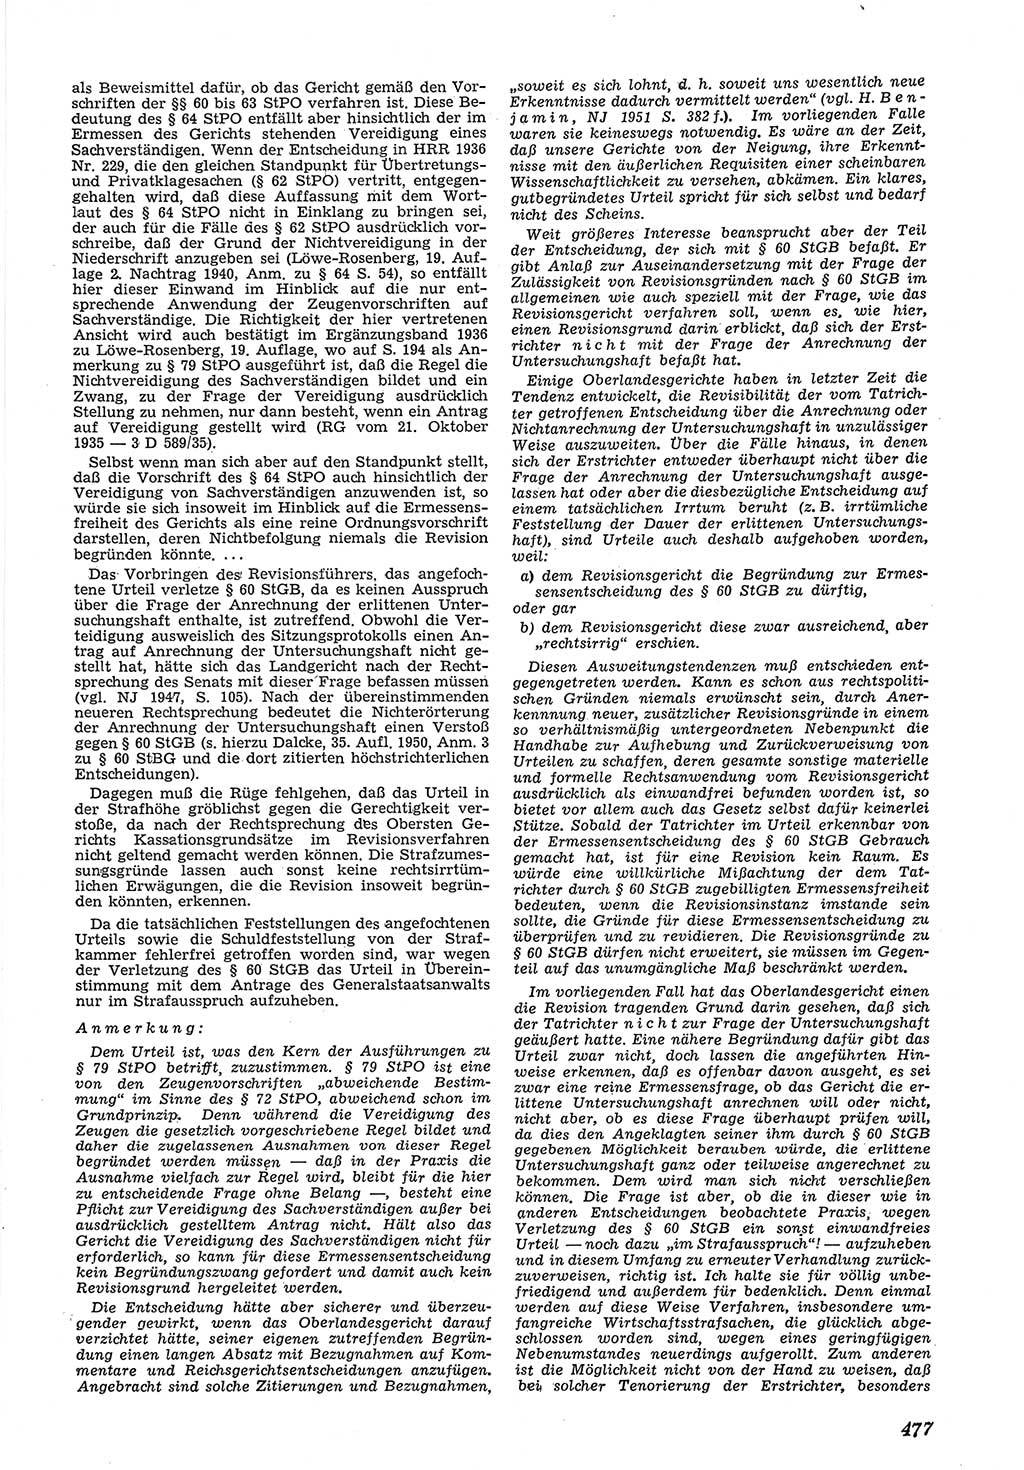 Neue Justiz (NJ), Zeitschrift für Recht und Rechtswissenschaft [Deutsche Demokratische Republik (DDR)], 5. Jahrgang 1951, Seite 477 (NJ DDR 1951, S. 477)